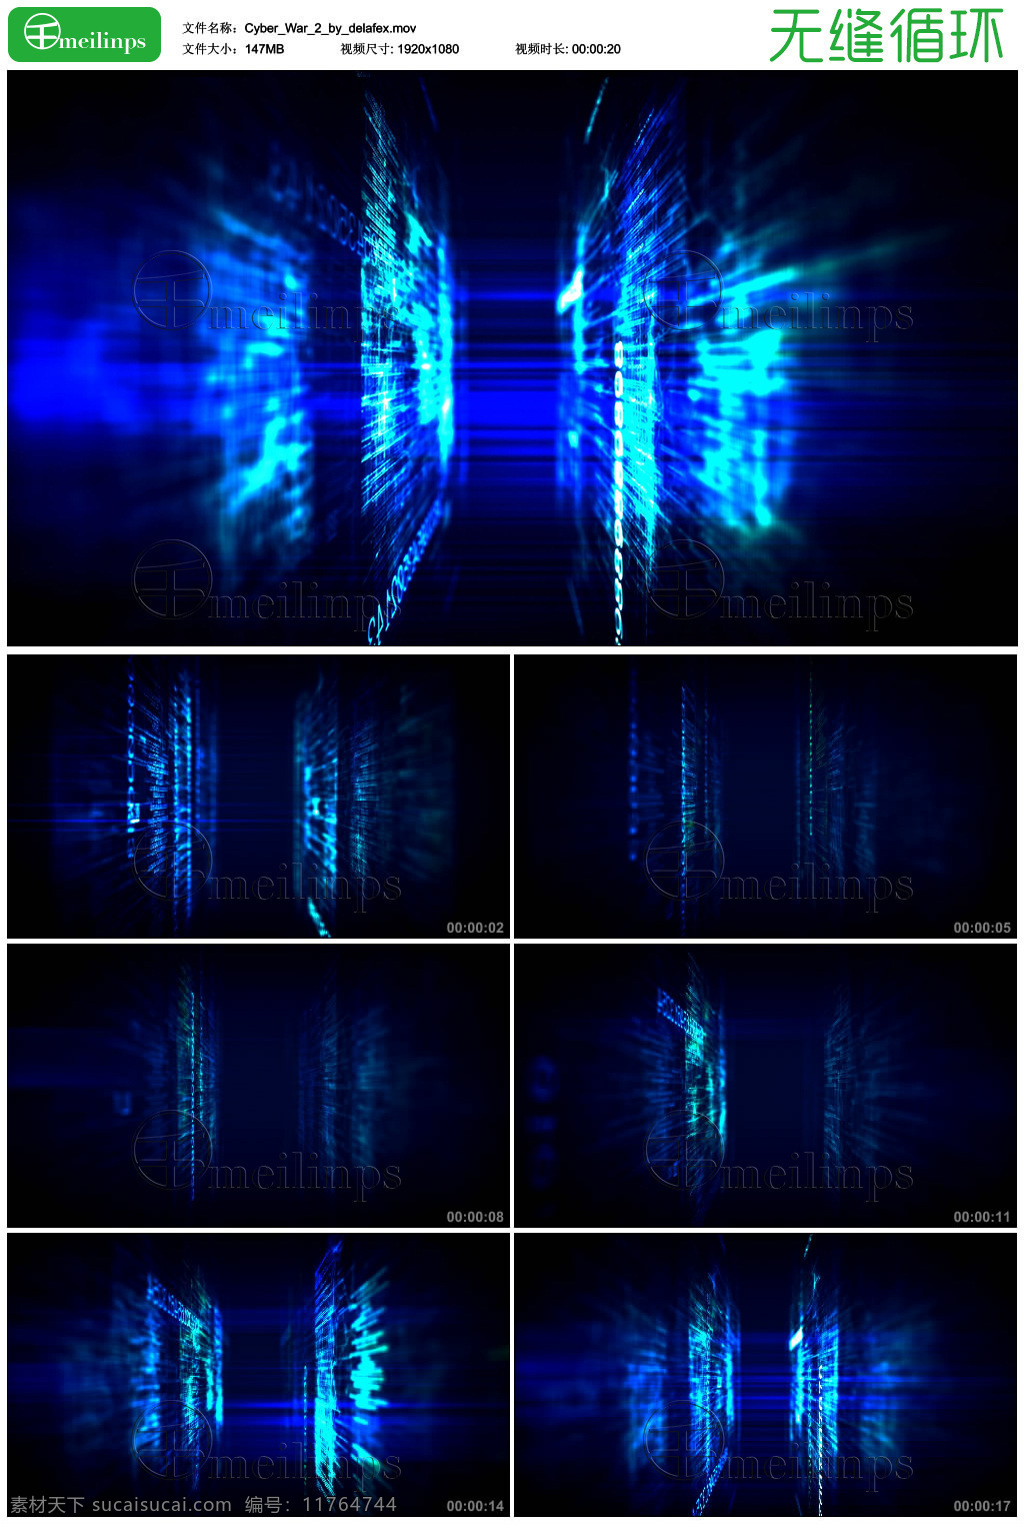 网络之战 科幻 数码 空间 矩阵 视频 网格 科技 技术 数据 计算机 蓝色 黑客帝国 数字 代码 视频素材 mov 黑色